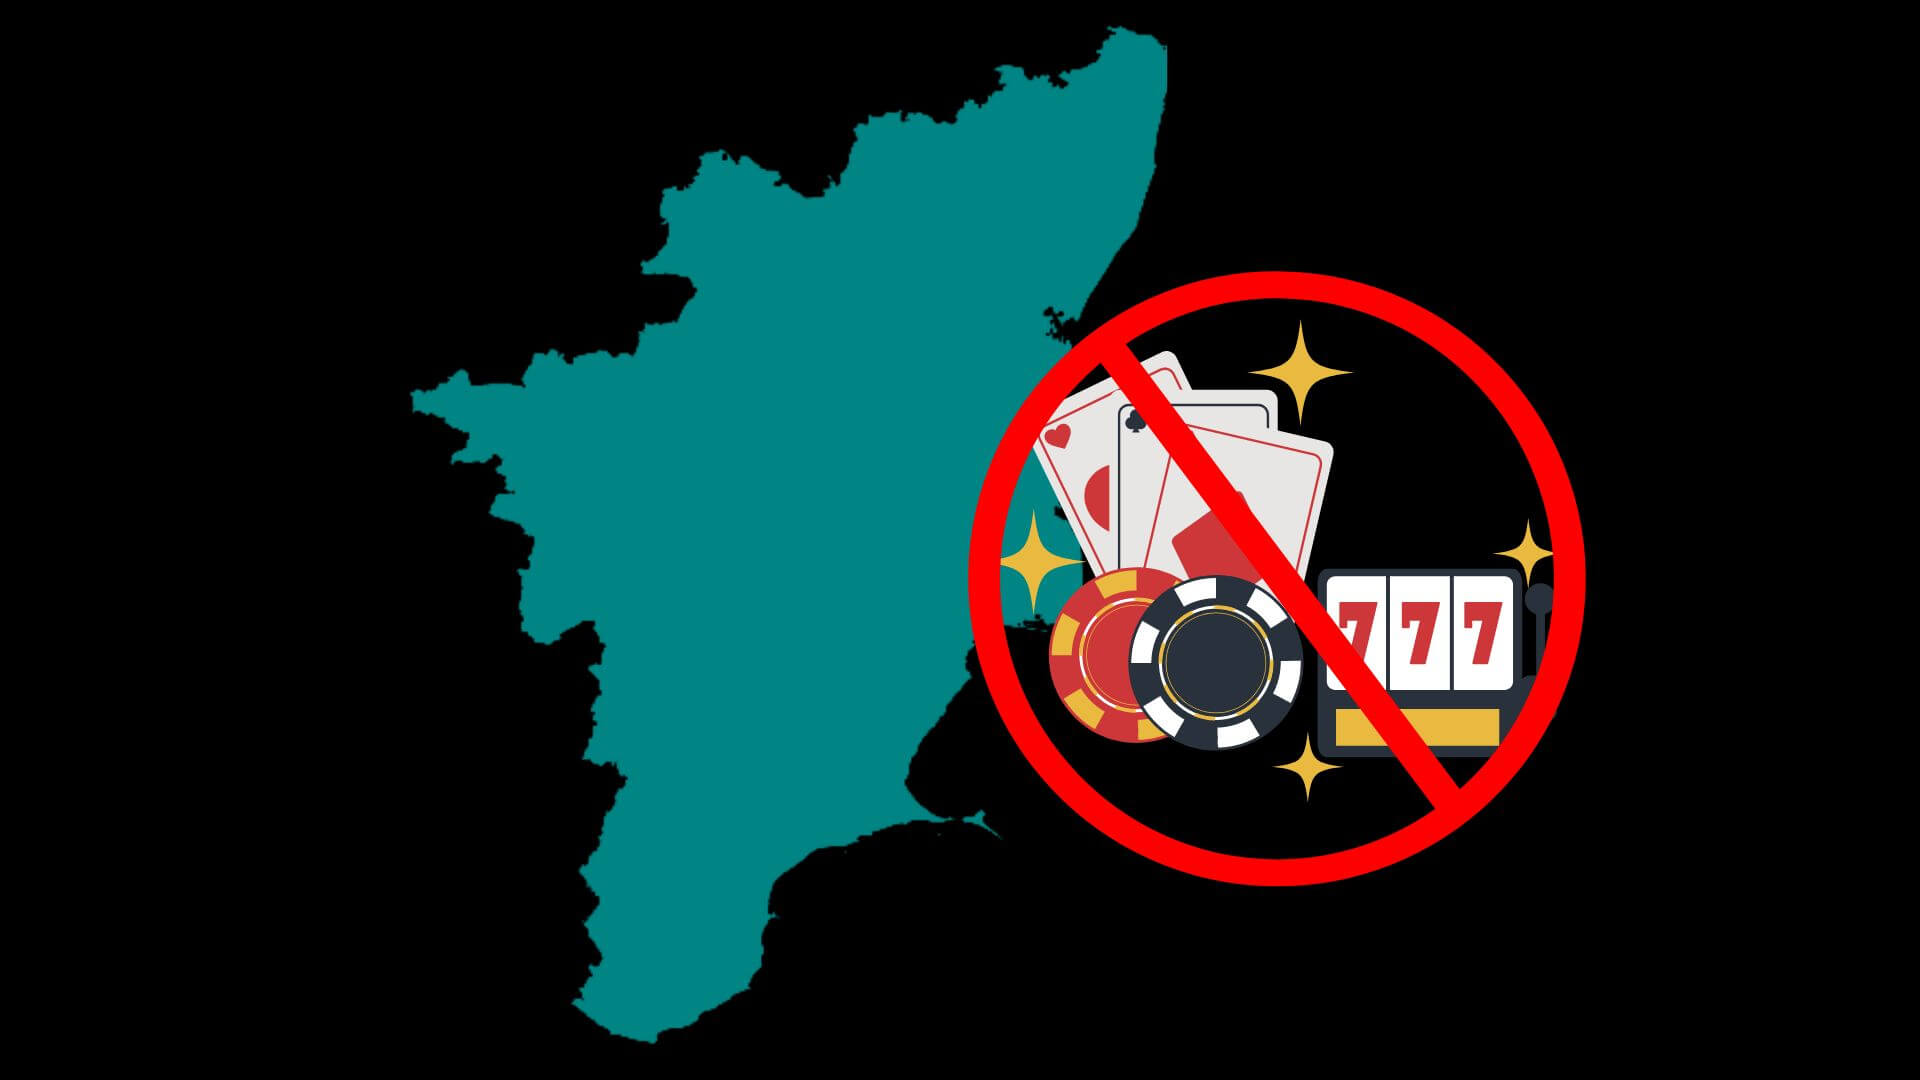 Tamil Nadu Seeks to Ban Online Gambling